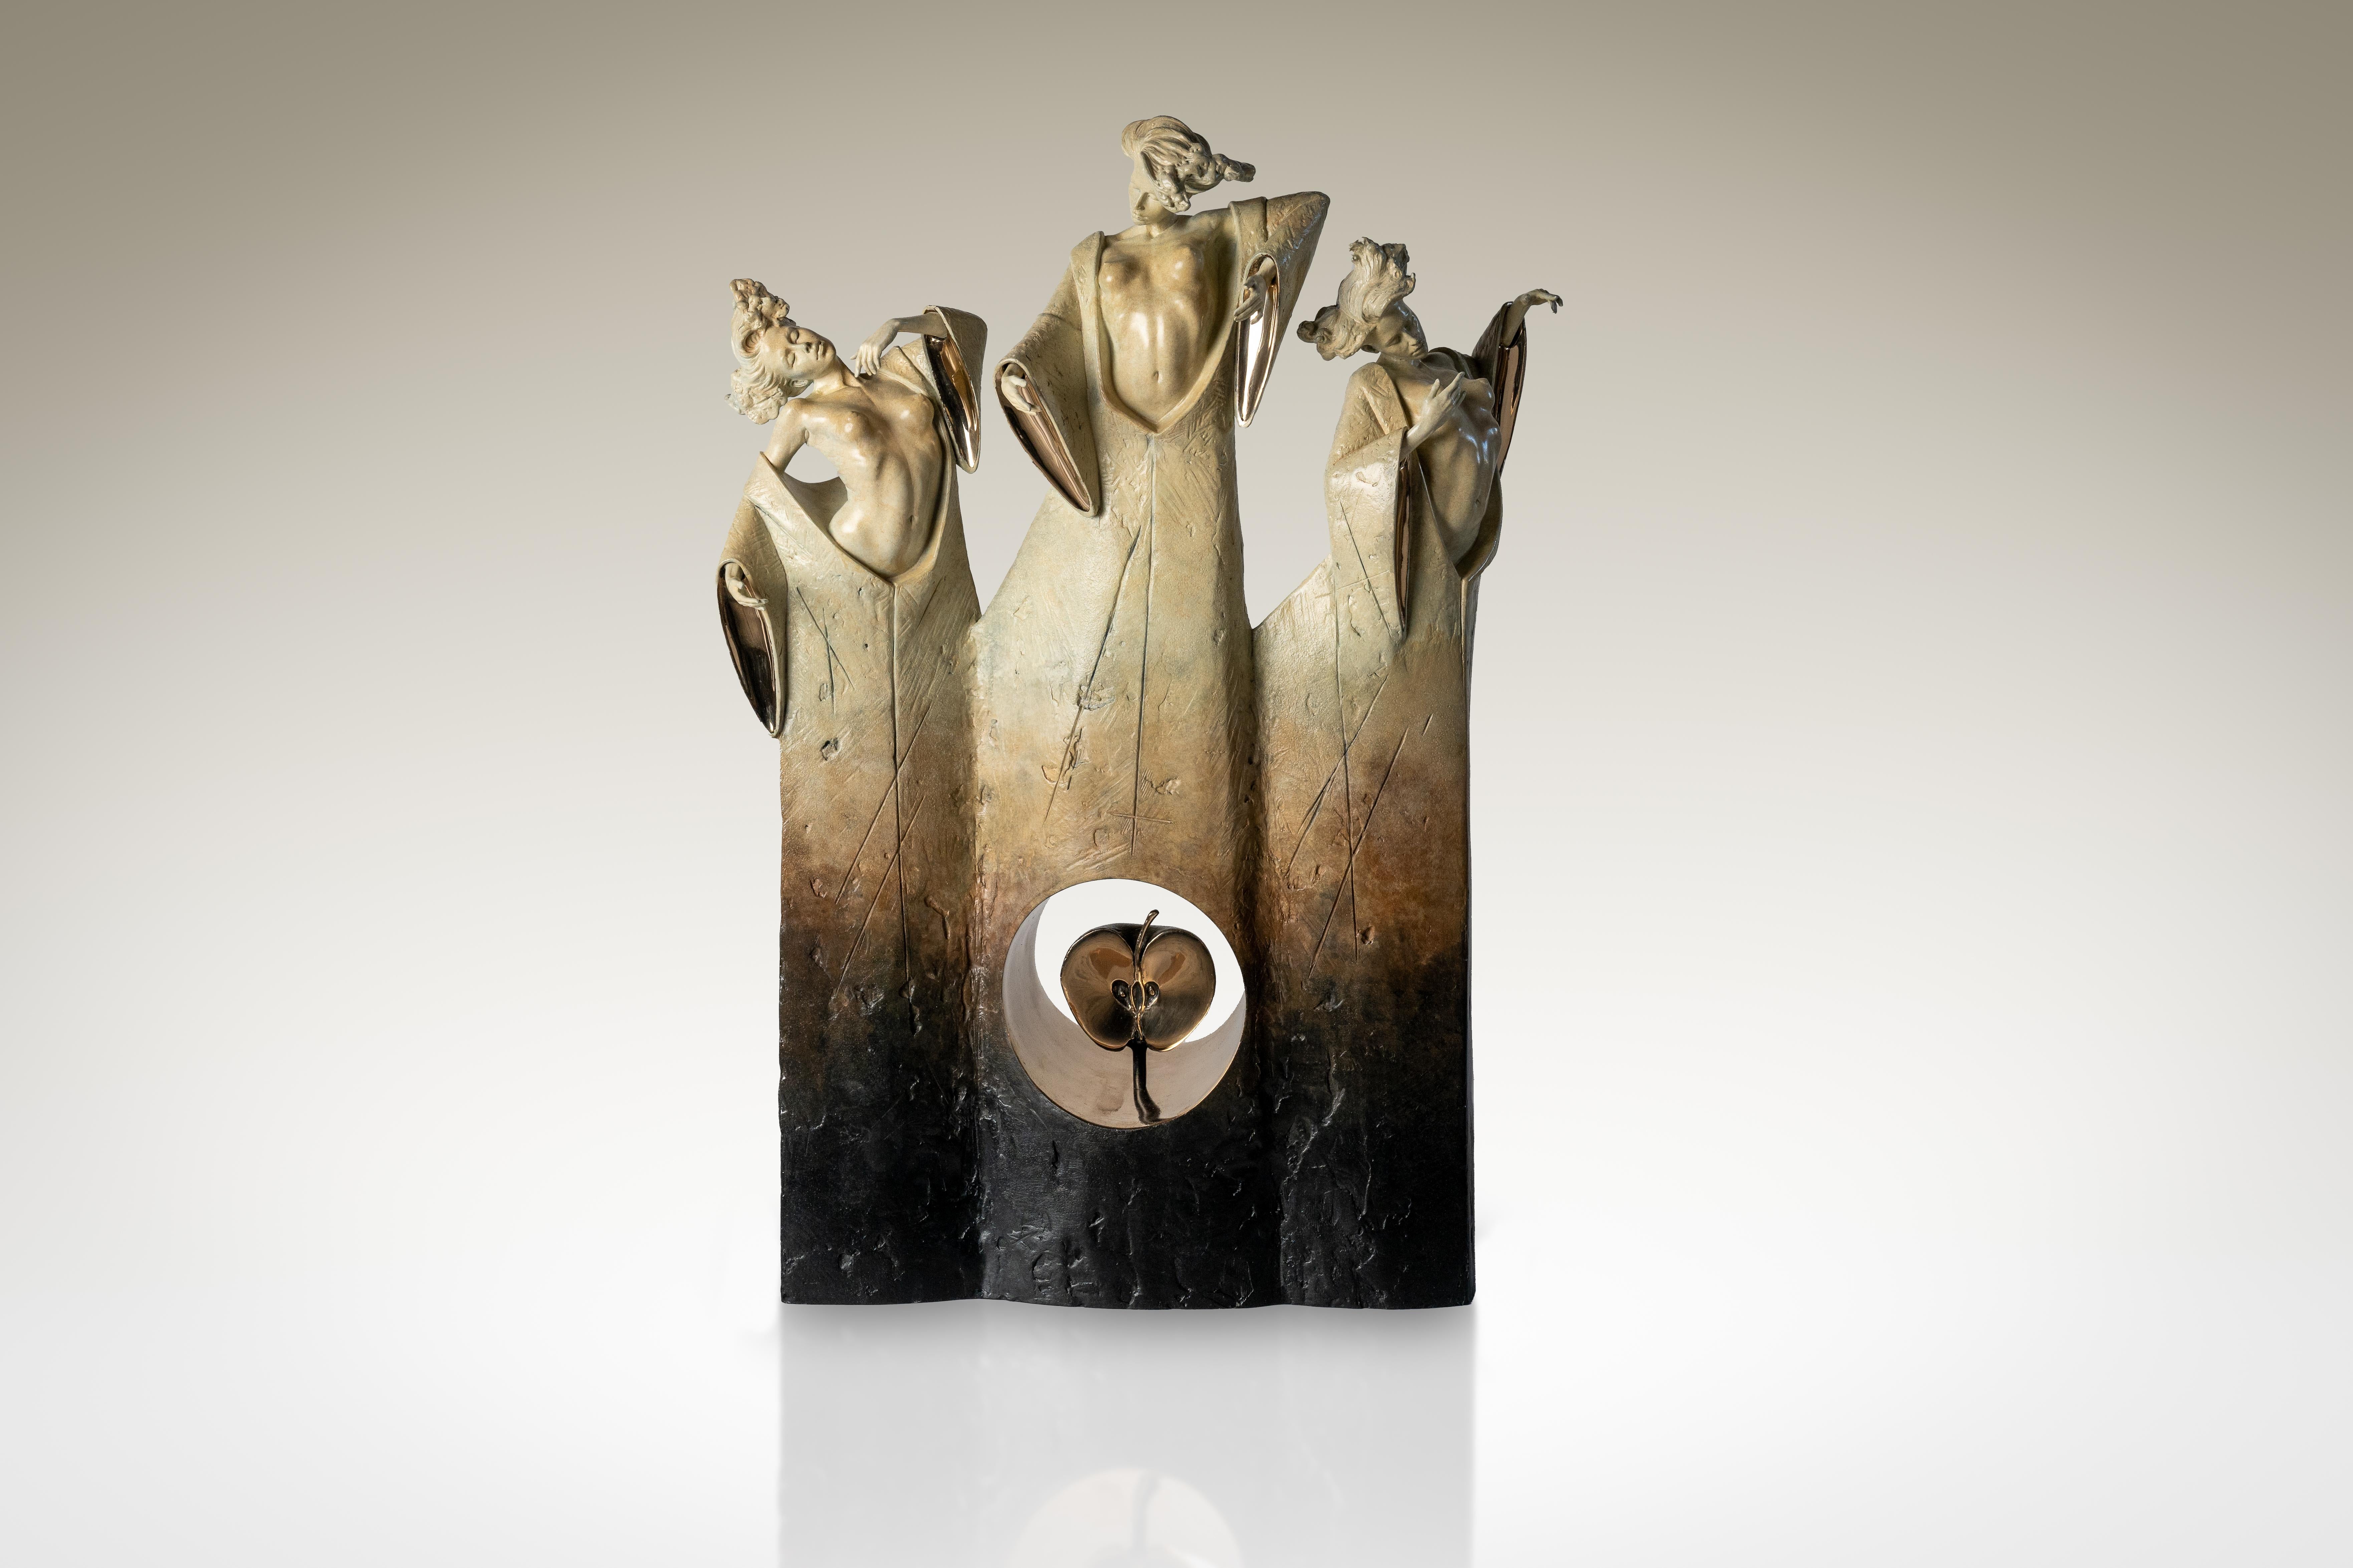 Figurative Sculpture Carl Payne - Sculpture contemporaine en bronze Mythe grec ancien "Les trois destins", figuratif